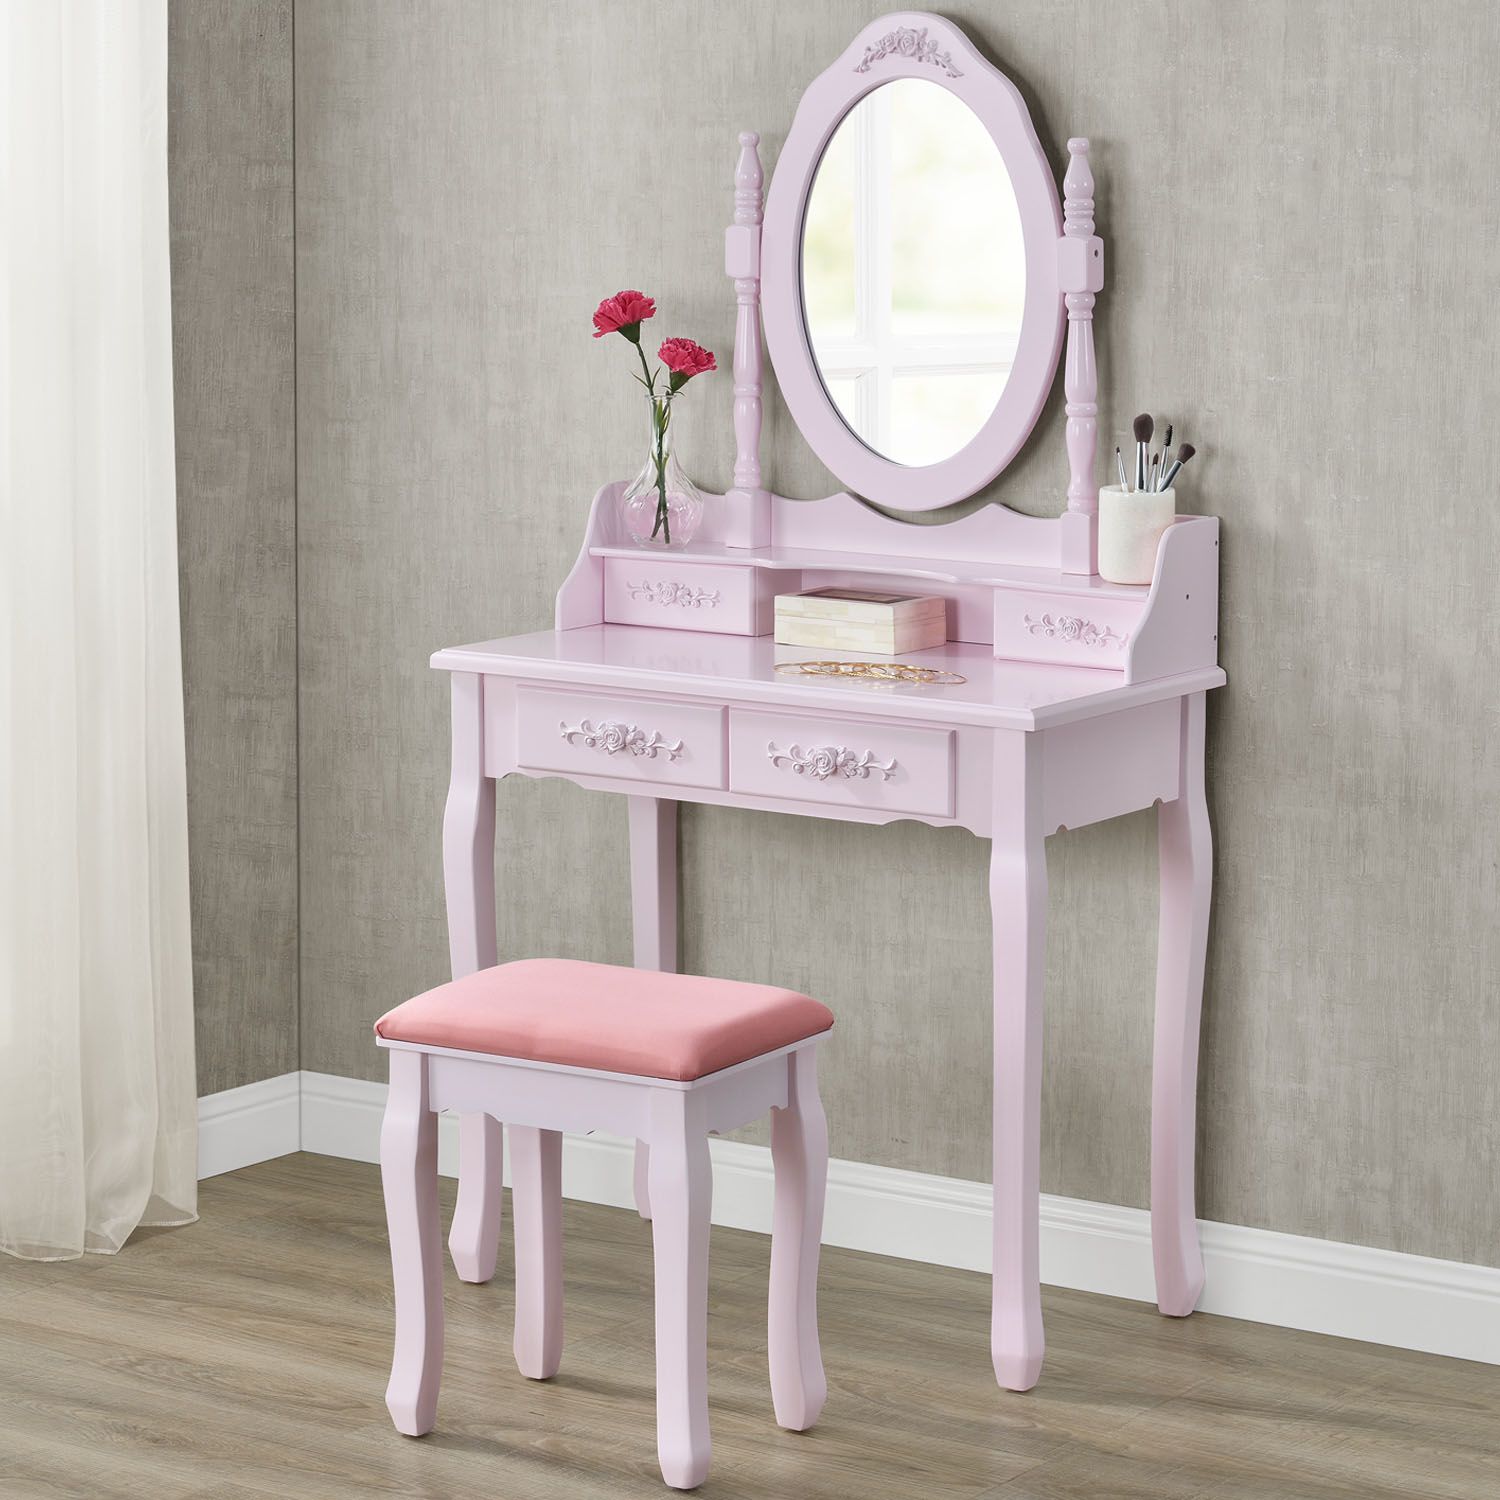 Toaletní stolek Marie “Pink” Thérése - Therese.cz